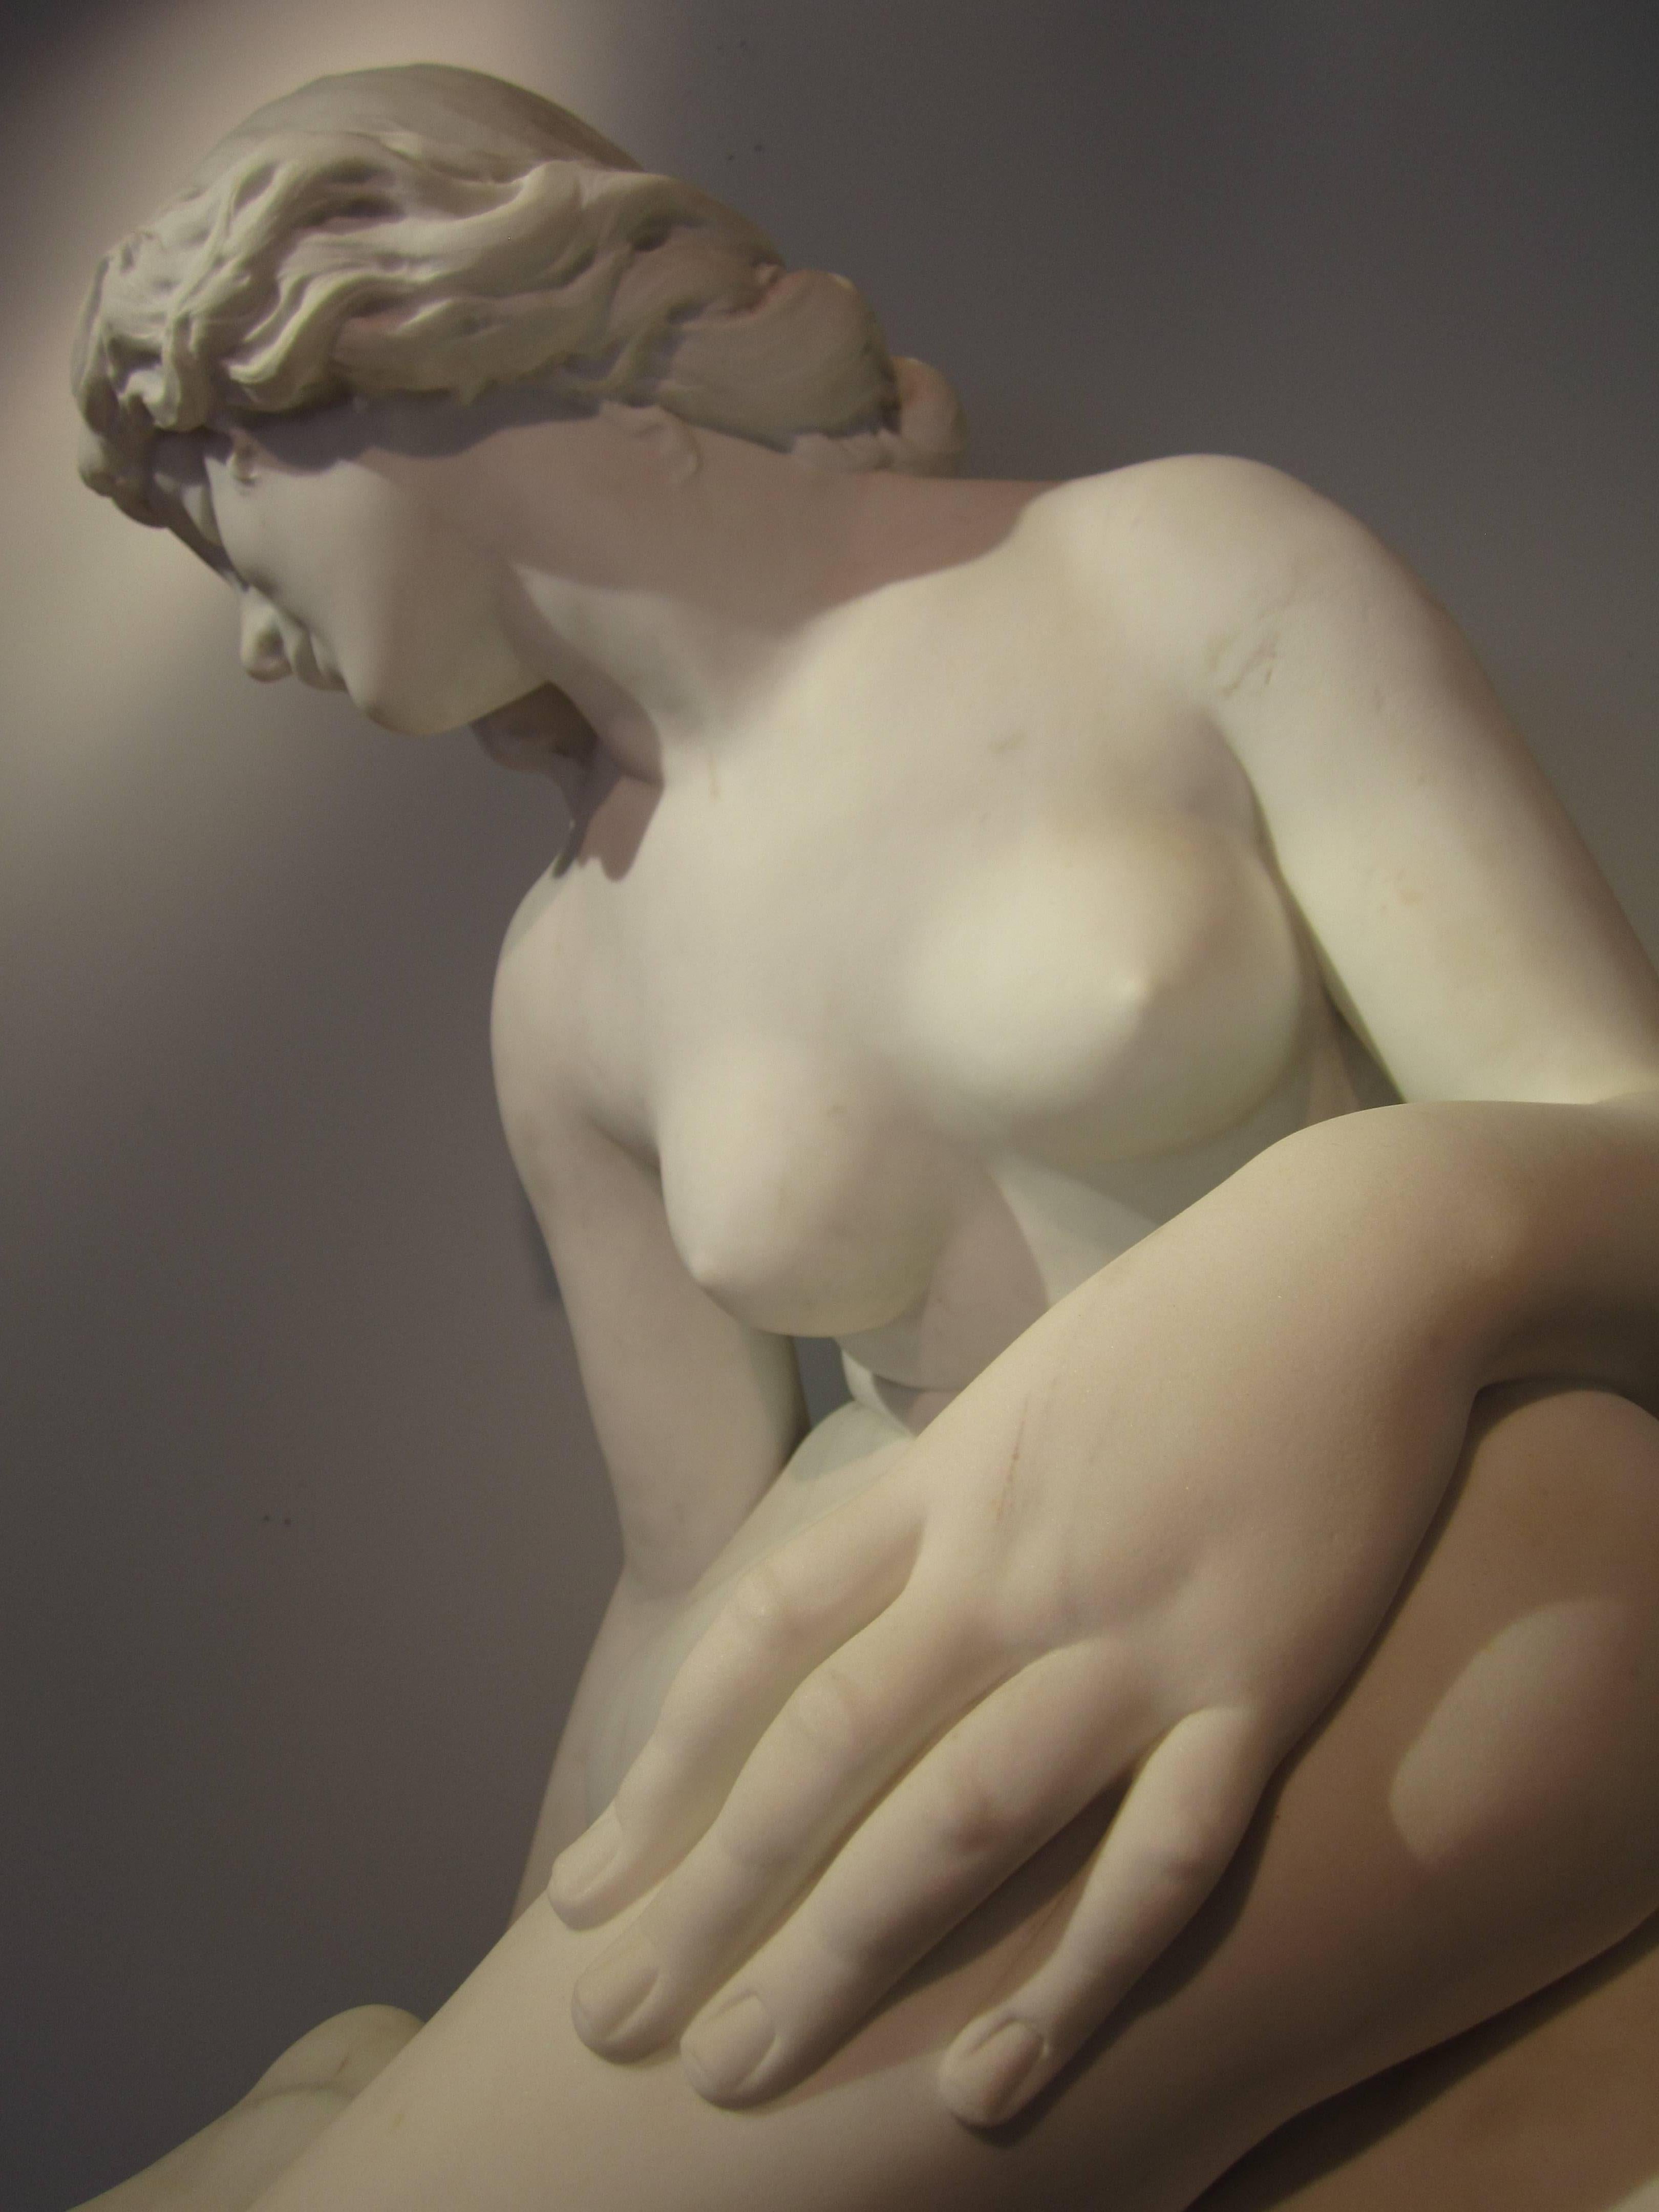 Handgeschnitzt aus dem hochgeschätzten italienischen Carrara-Marmor aus der Toskana. Diese Statue einer jungen Nymphe strahlt Eleganz und Schönheit aus. Aus dem Studium der Figur geht hervor, dass der Bildhauer Pittaluga stark von den perfekten